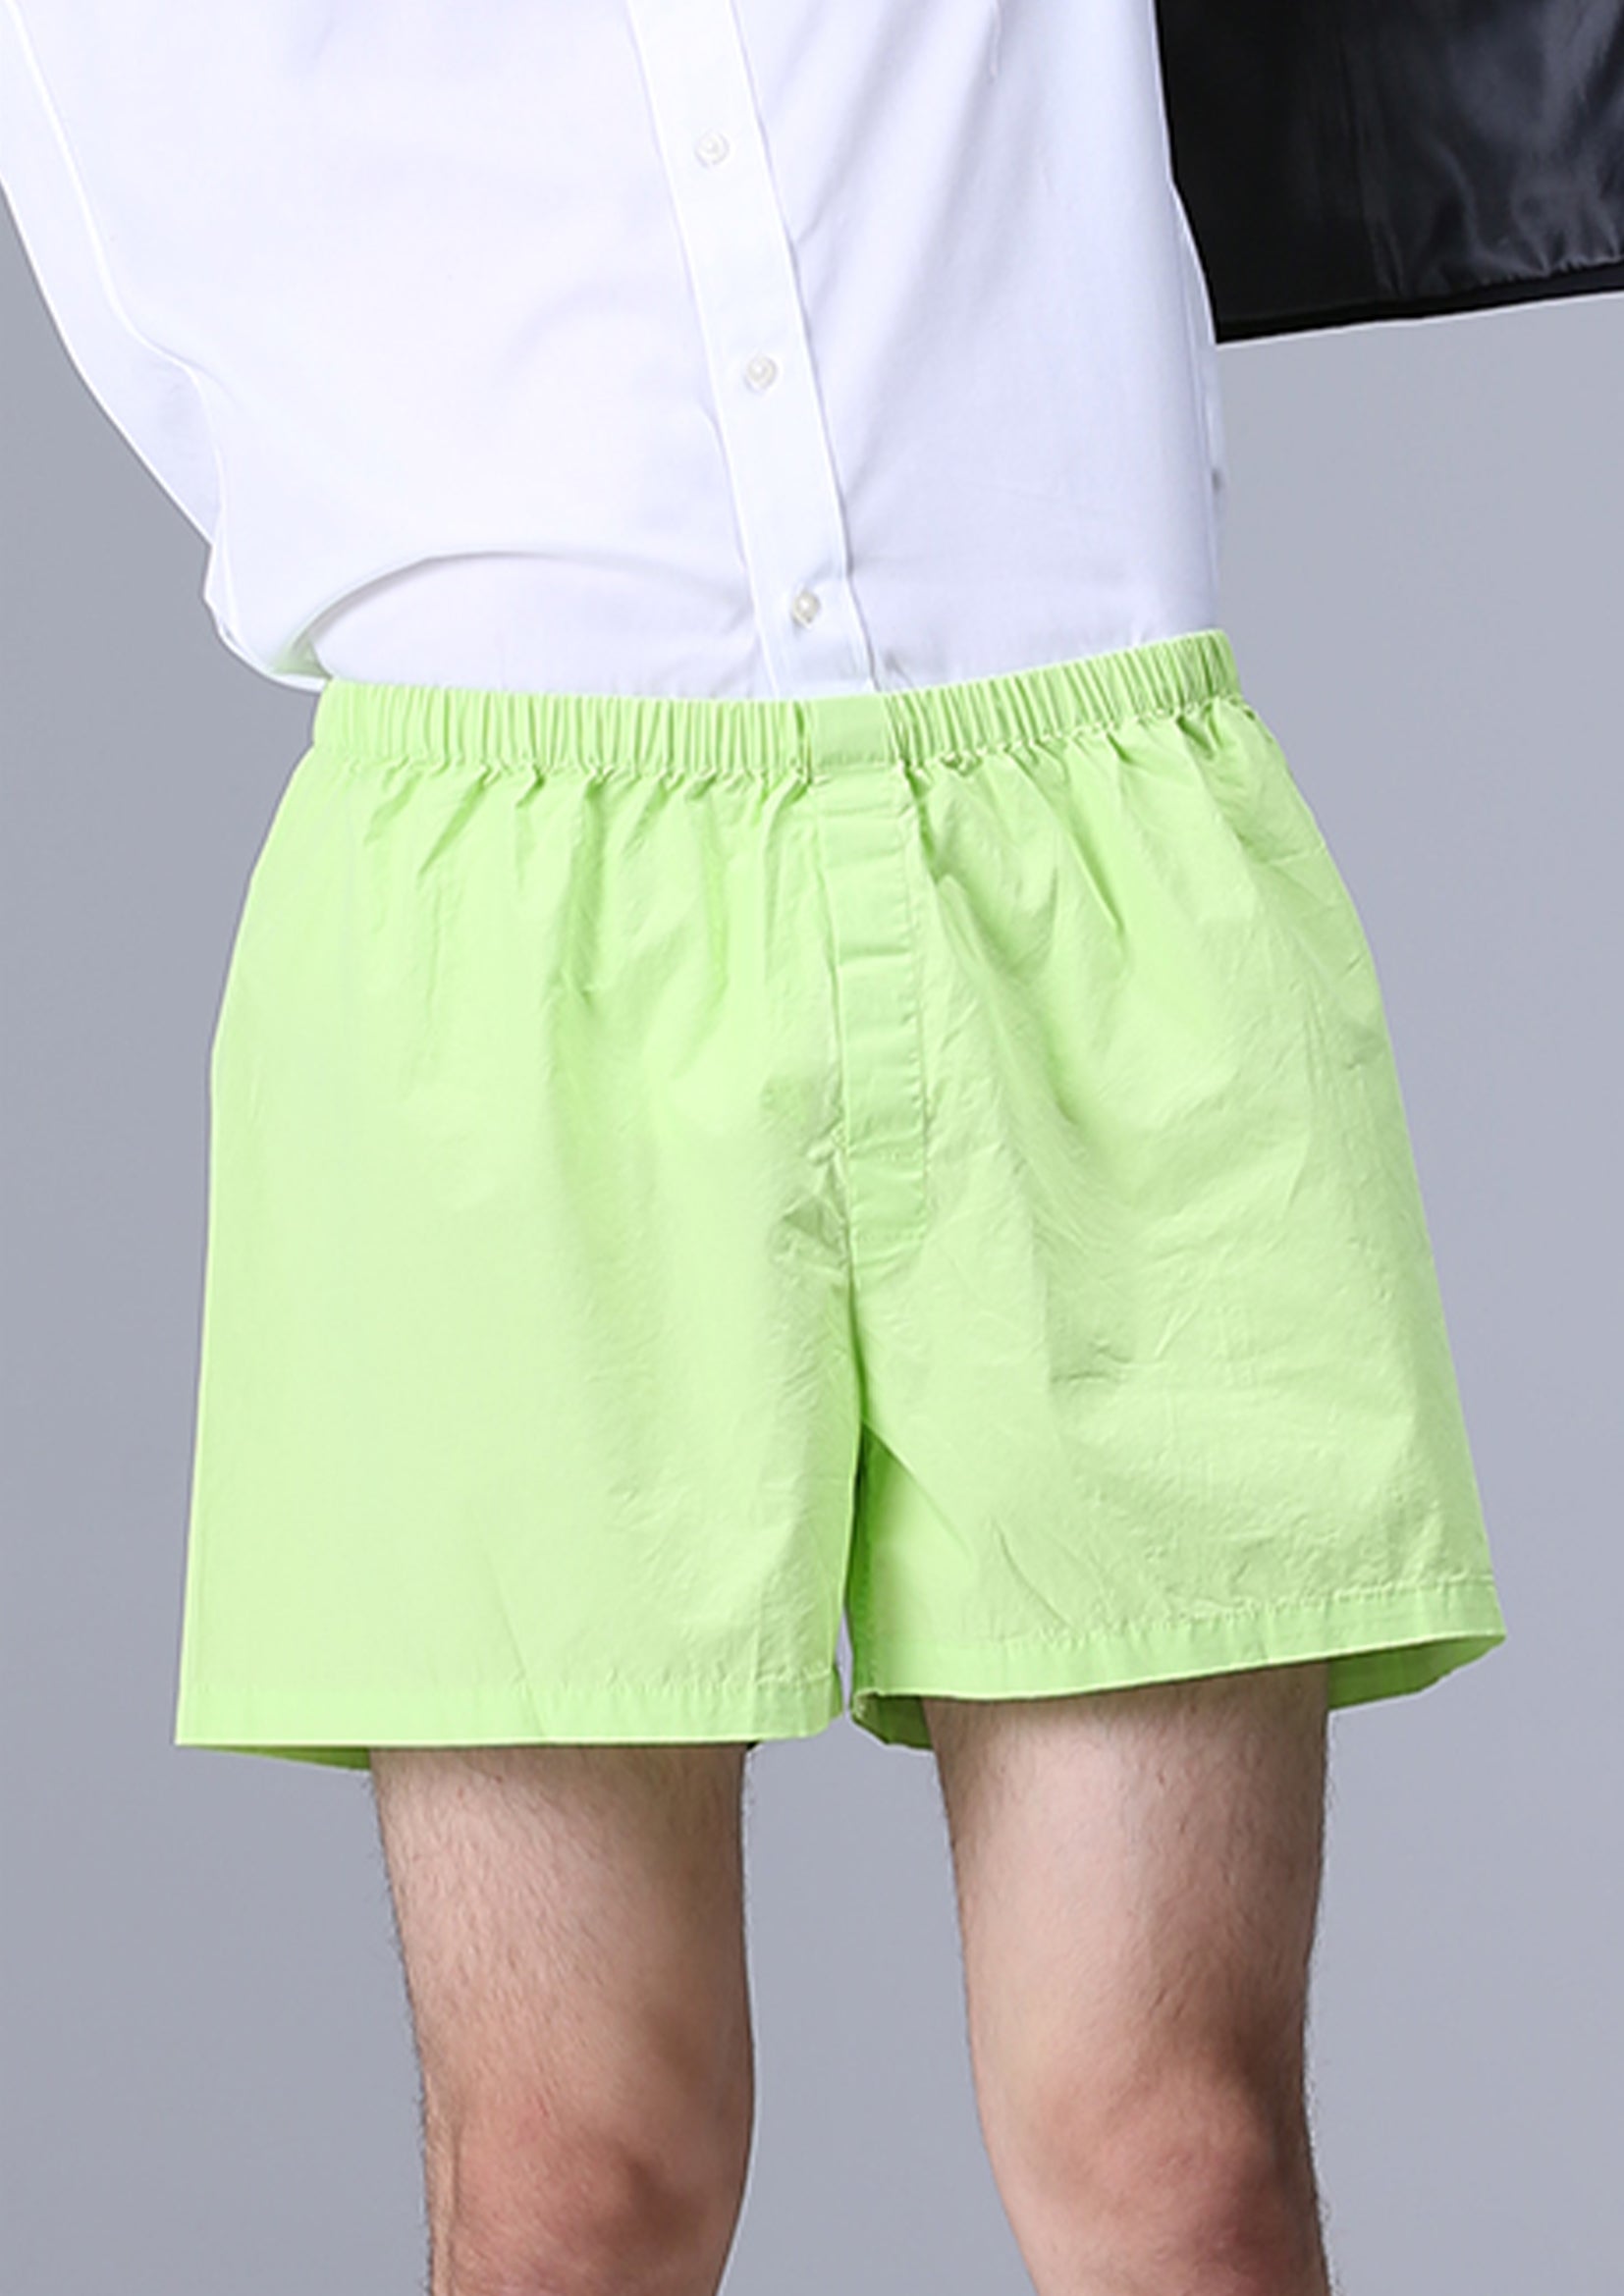 Unisex boxer shorts underwear in green